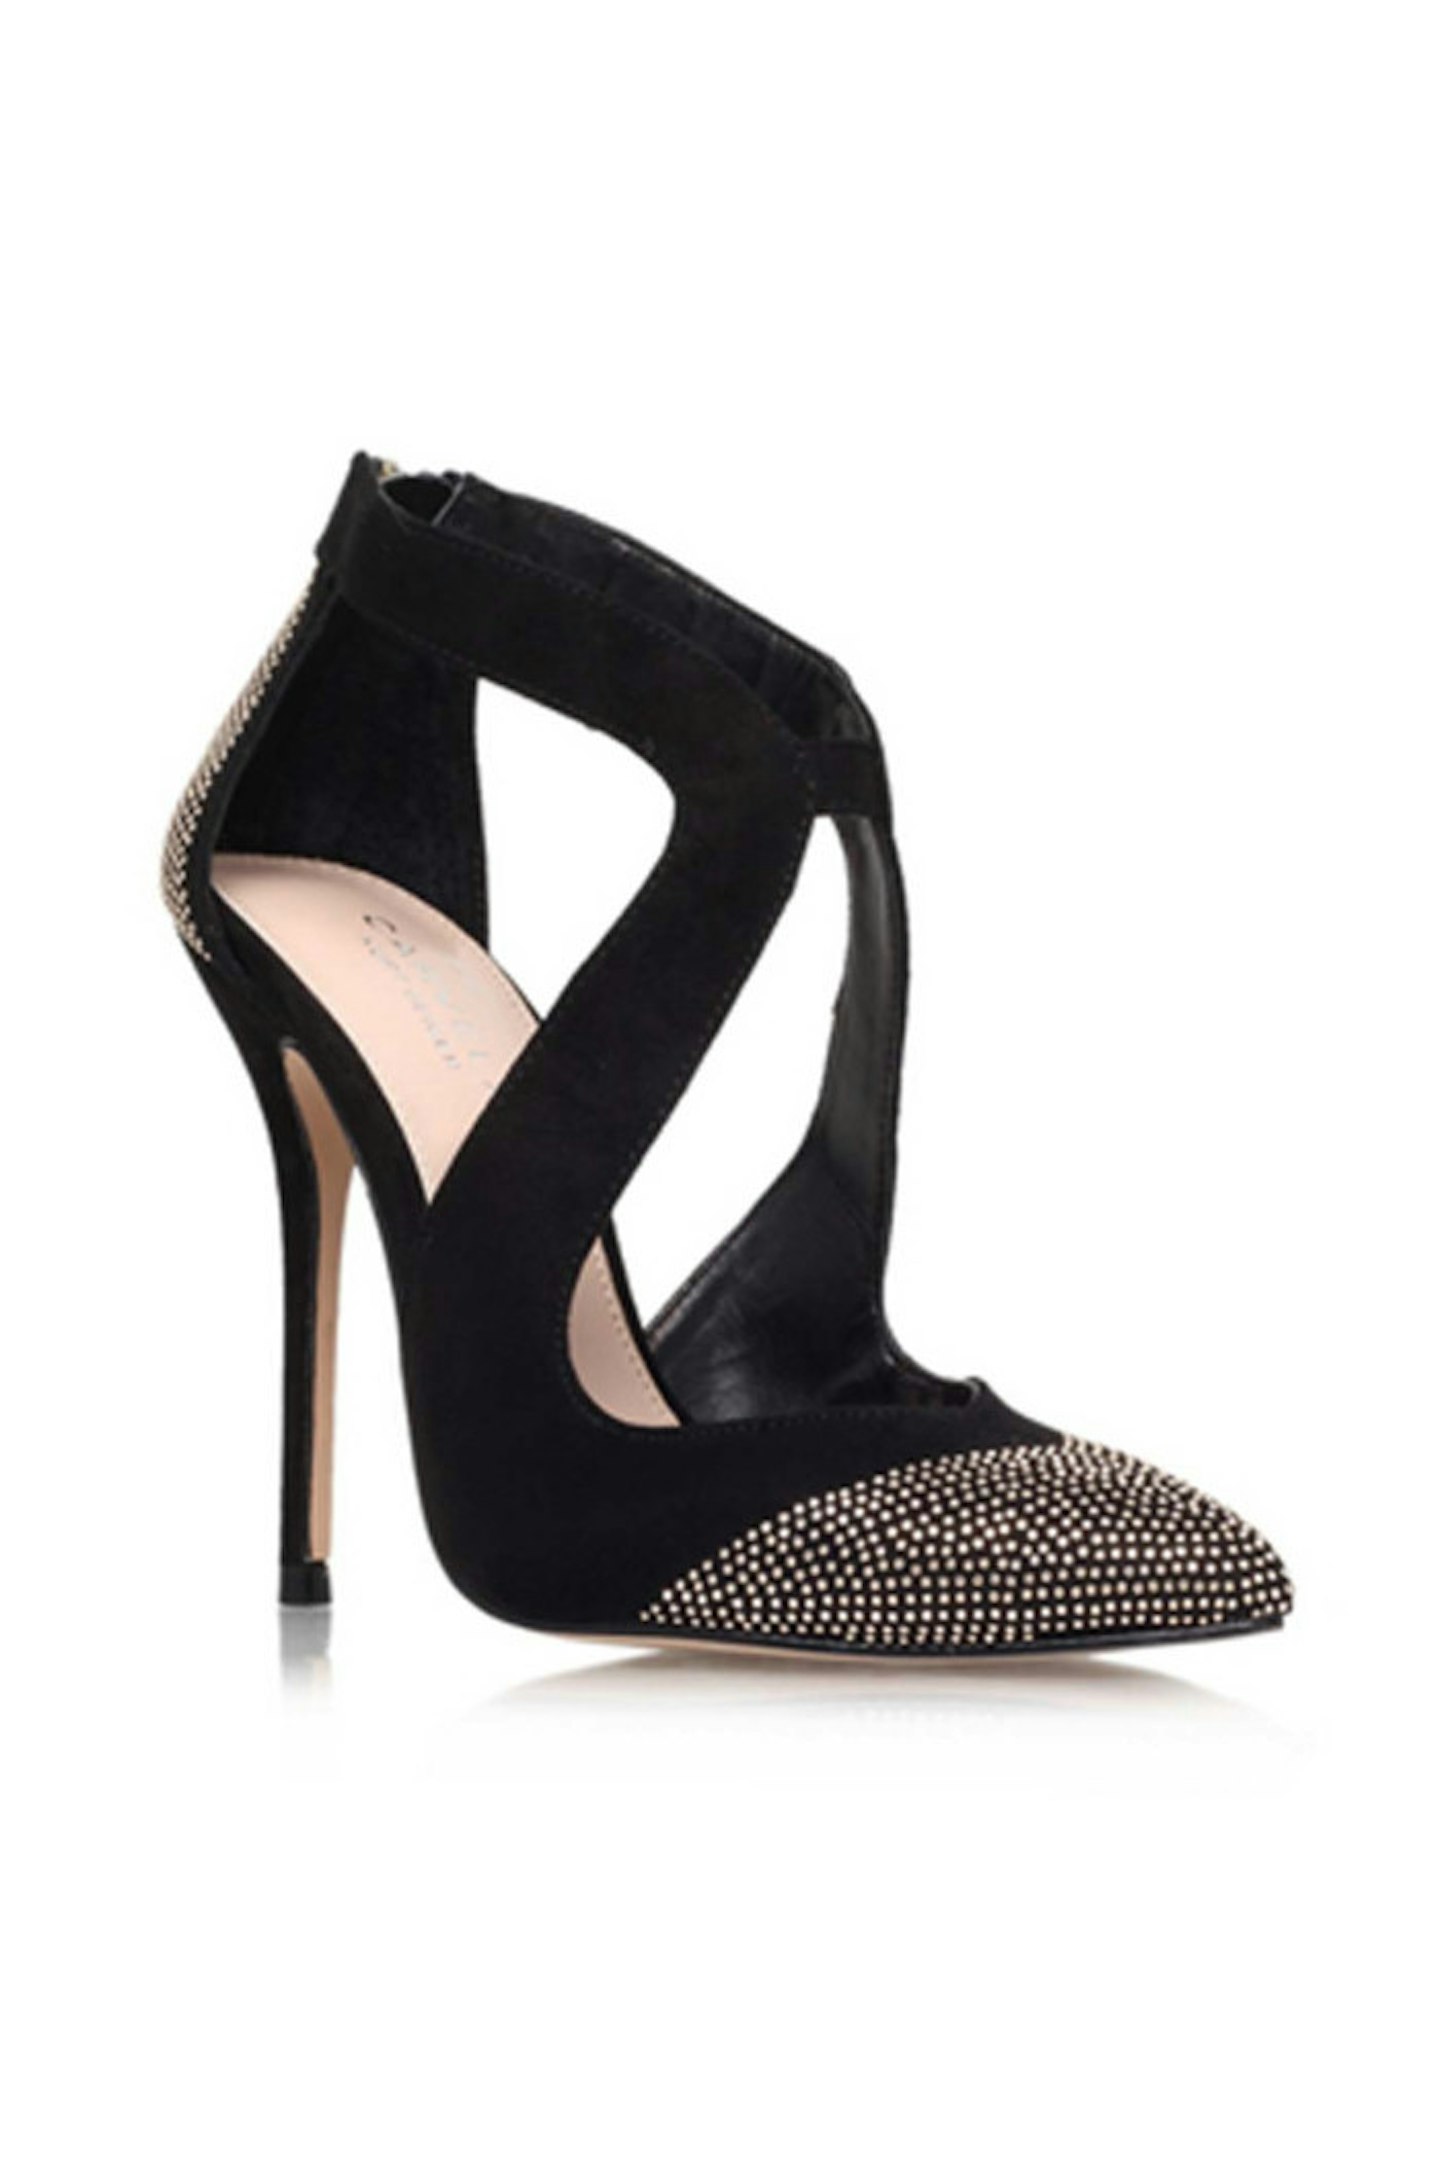 2. Black embellished heels, £130, Kurt Geiger